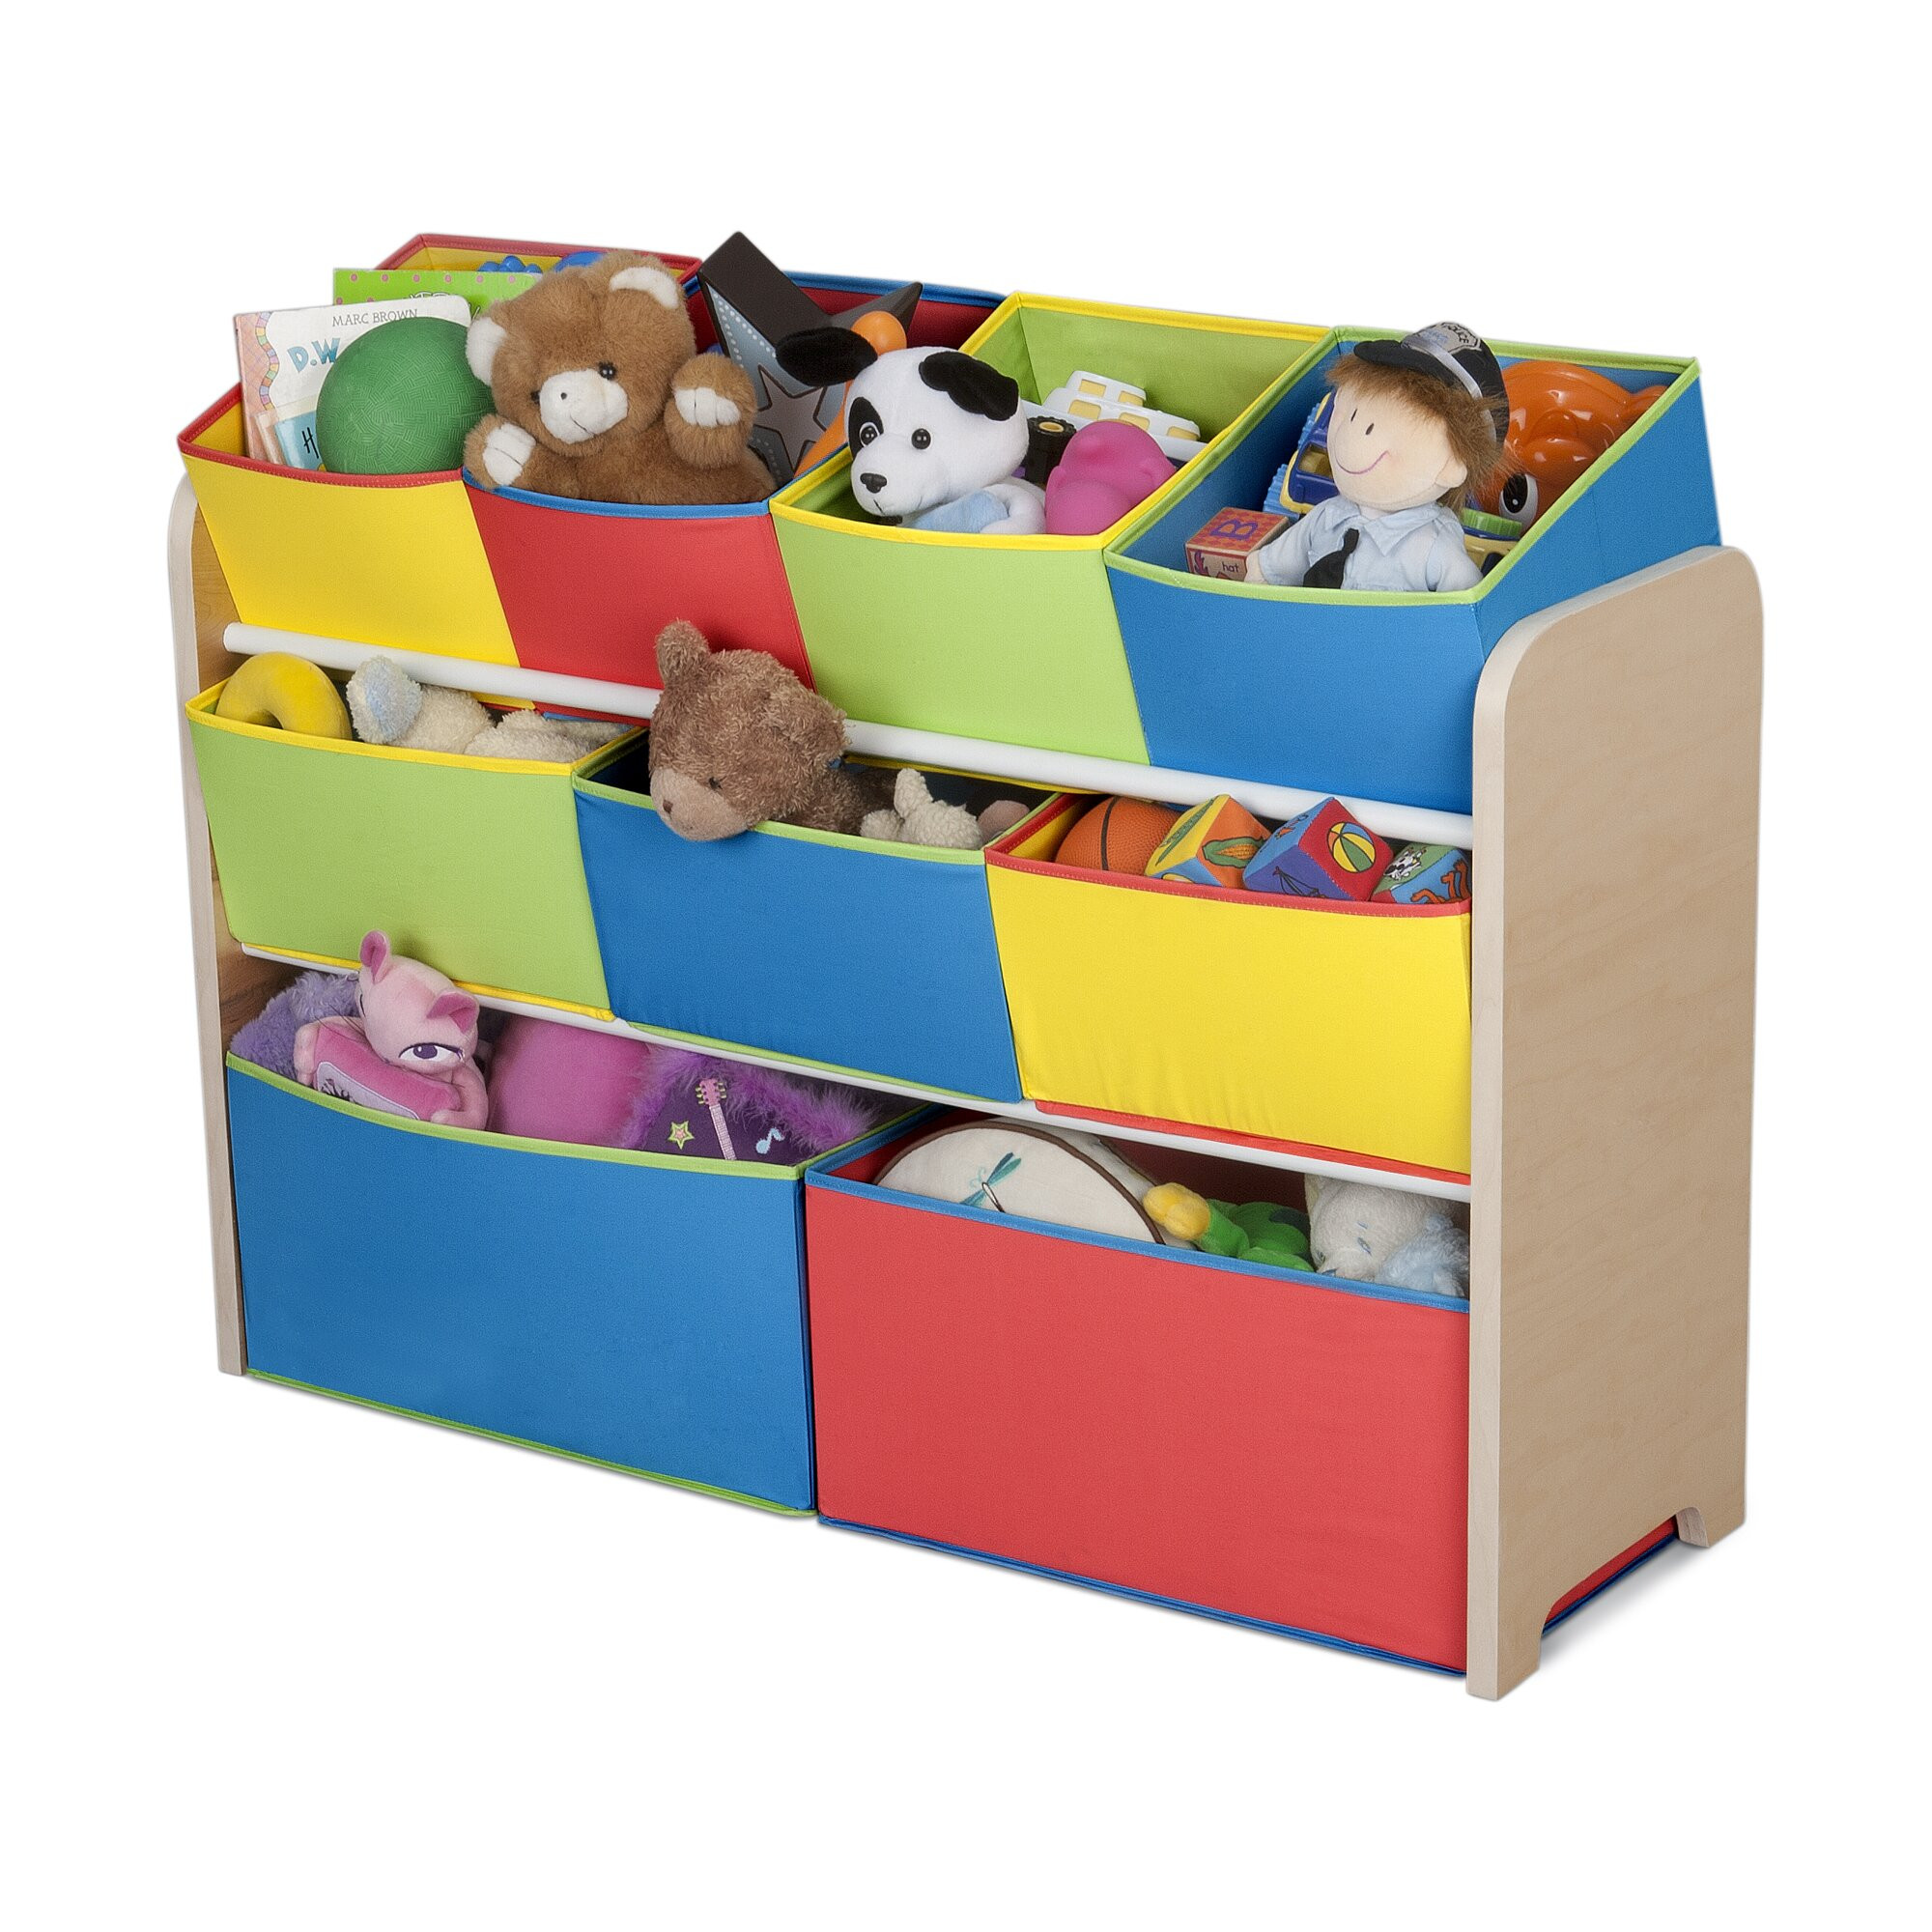 Childrens Storage Bin
 Delta Children Multi Color Deluxe Toy Organizer with Bins